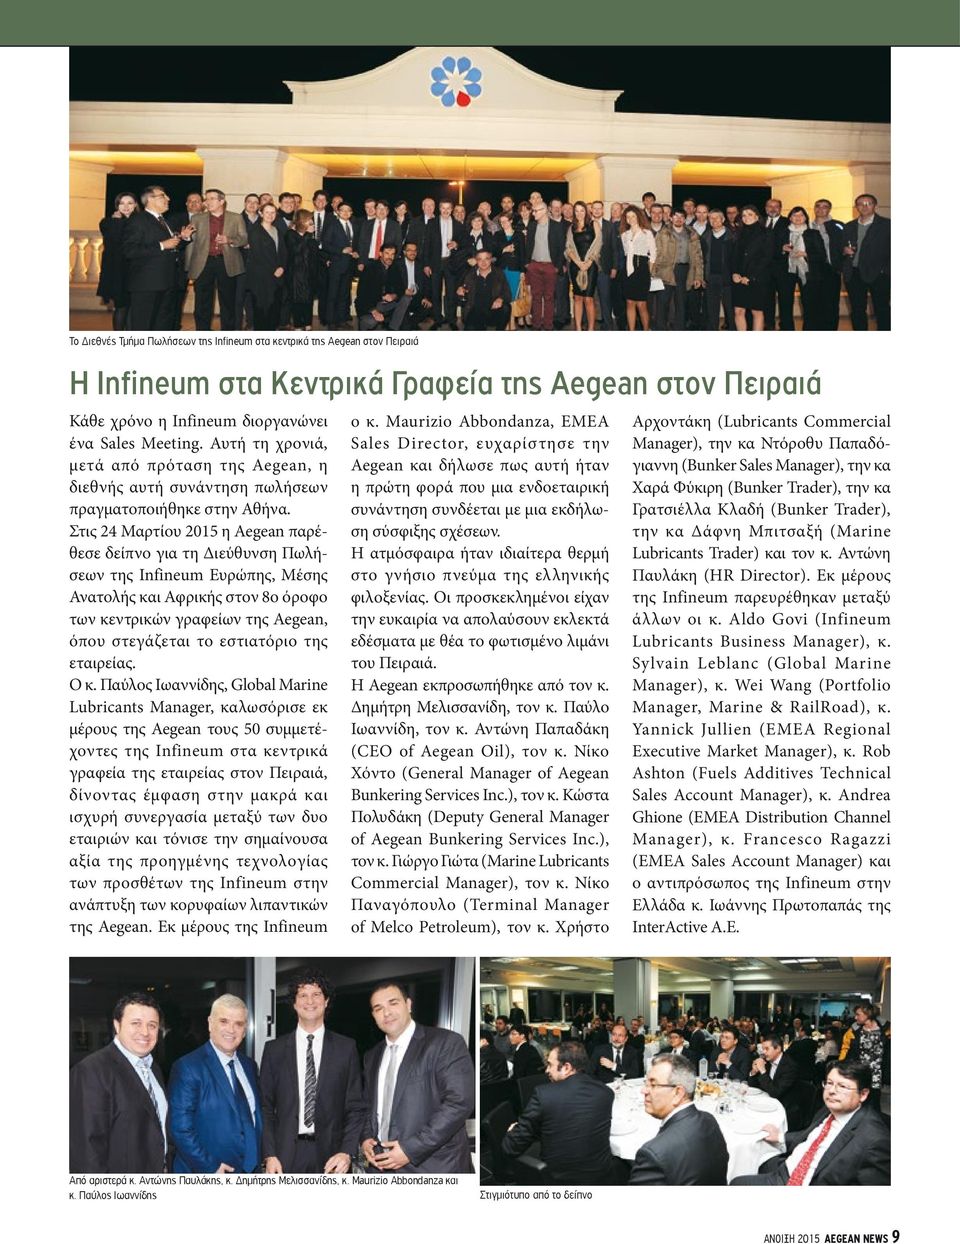 Στις 24 Μαρτίου 2015 η Aegean παρέθεσε δείπνο για τη Διεύθυνση Πωλήσεων της Infineum Ευρώπης, Μέσης Ανατολής και Αφρικής στον 8ο όροφο των κεντρικών γραφείων της Aegean, όπου στεγάζεται το εστιατόριο